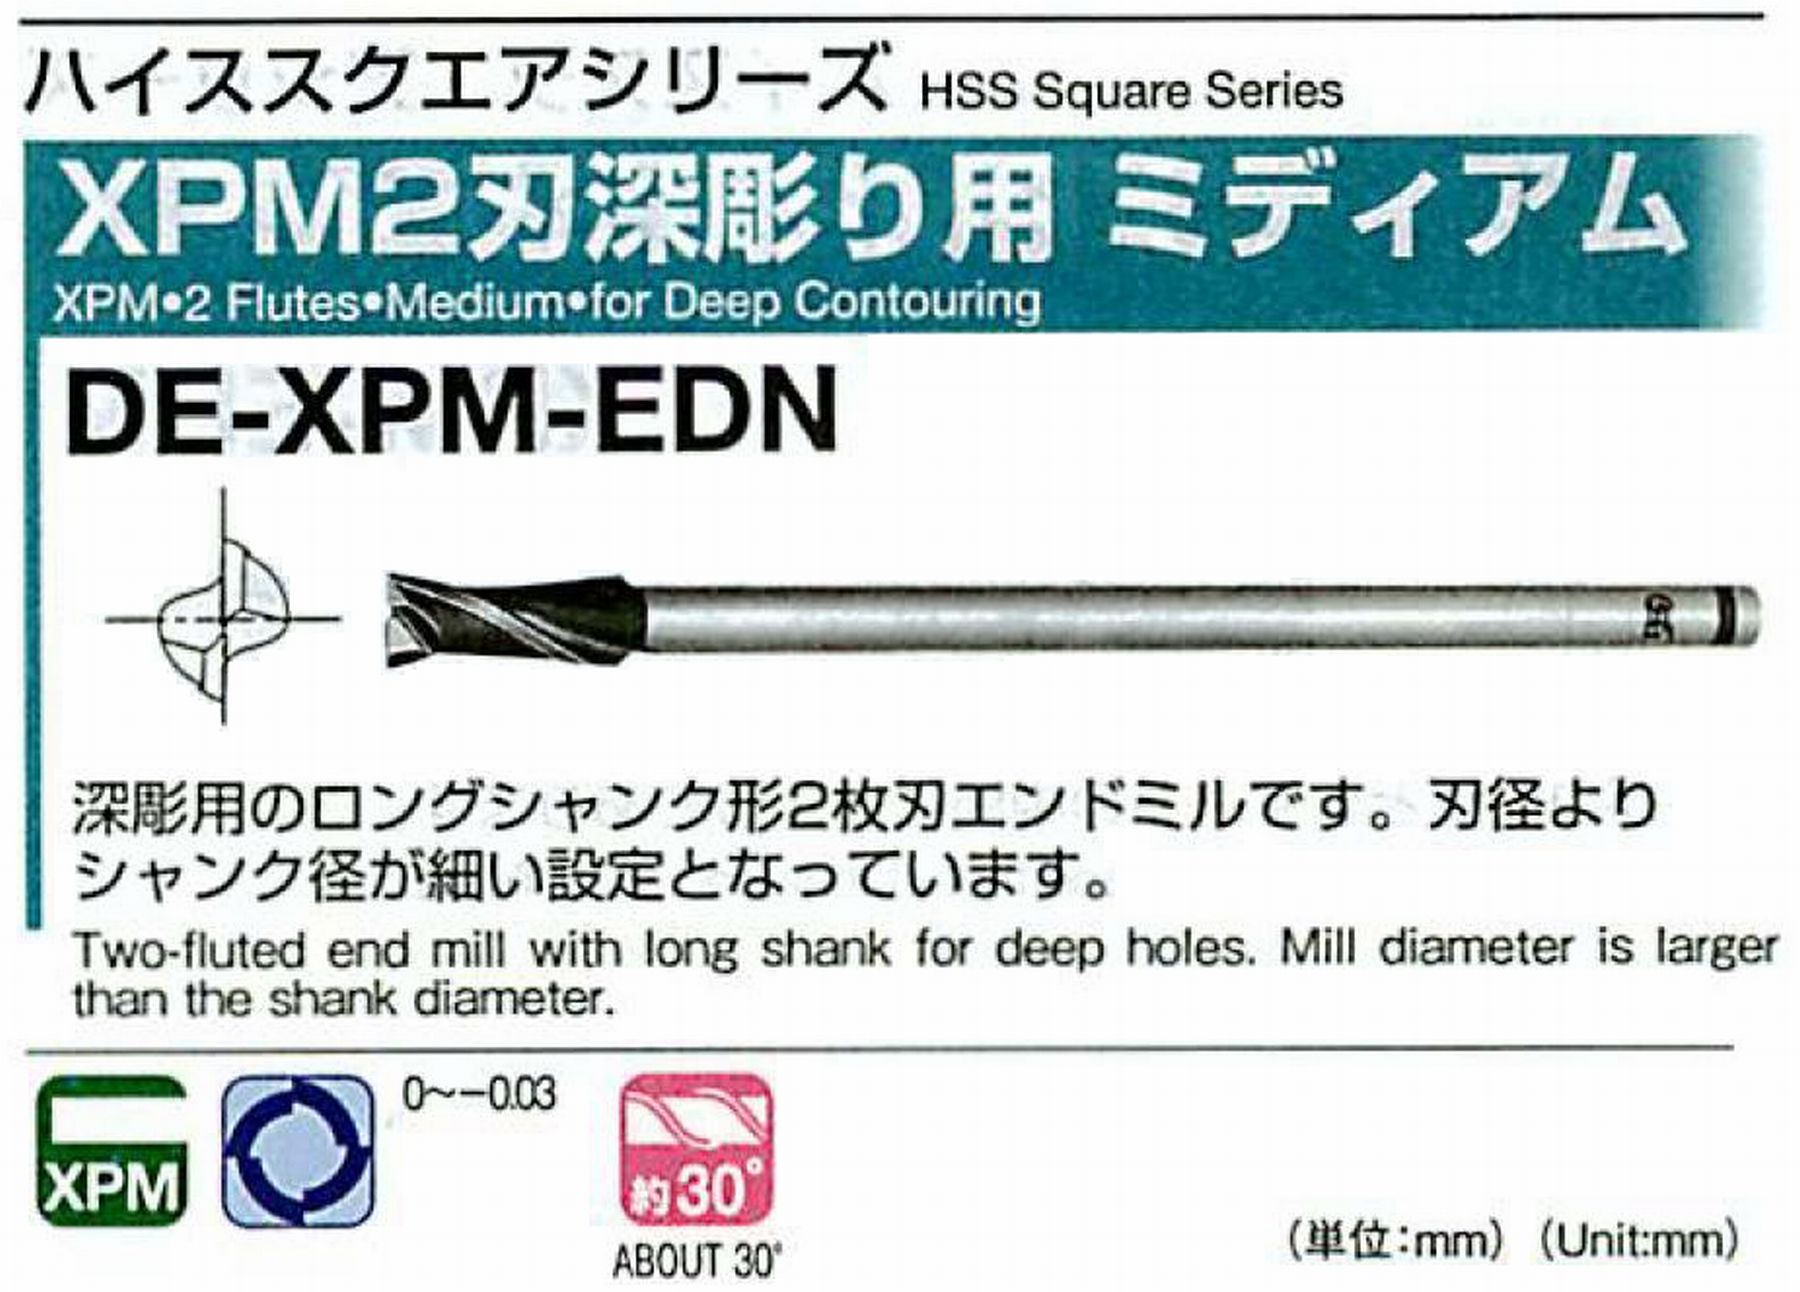 オーエスジー/OSG XPM2刃深彫り用 ミディアム DE-XPM-EDN 外径45 全長350 刃長70 シャンク径32mm